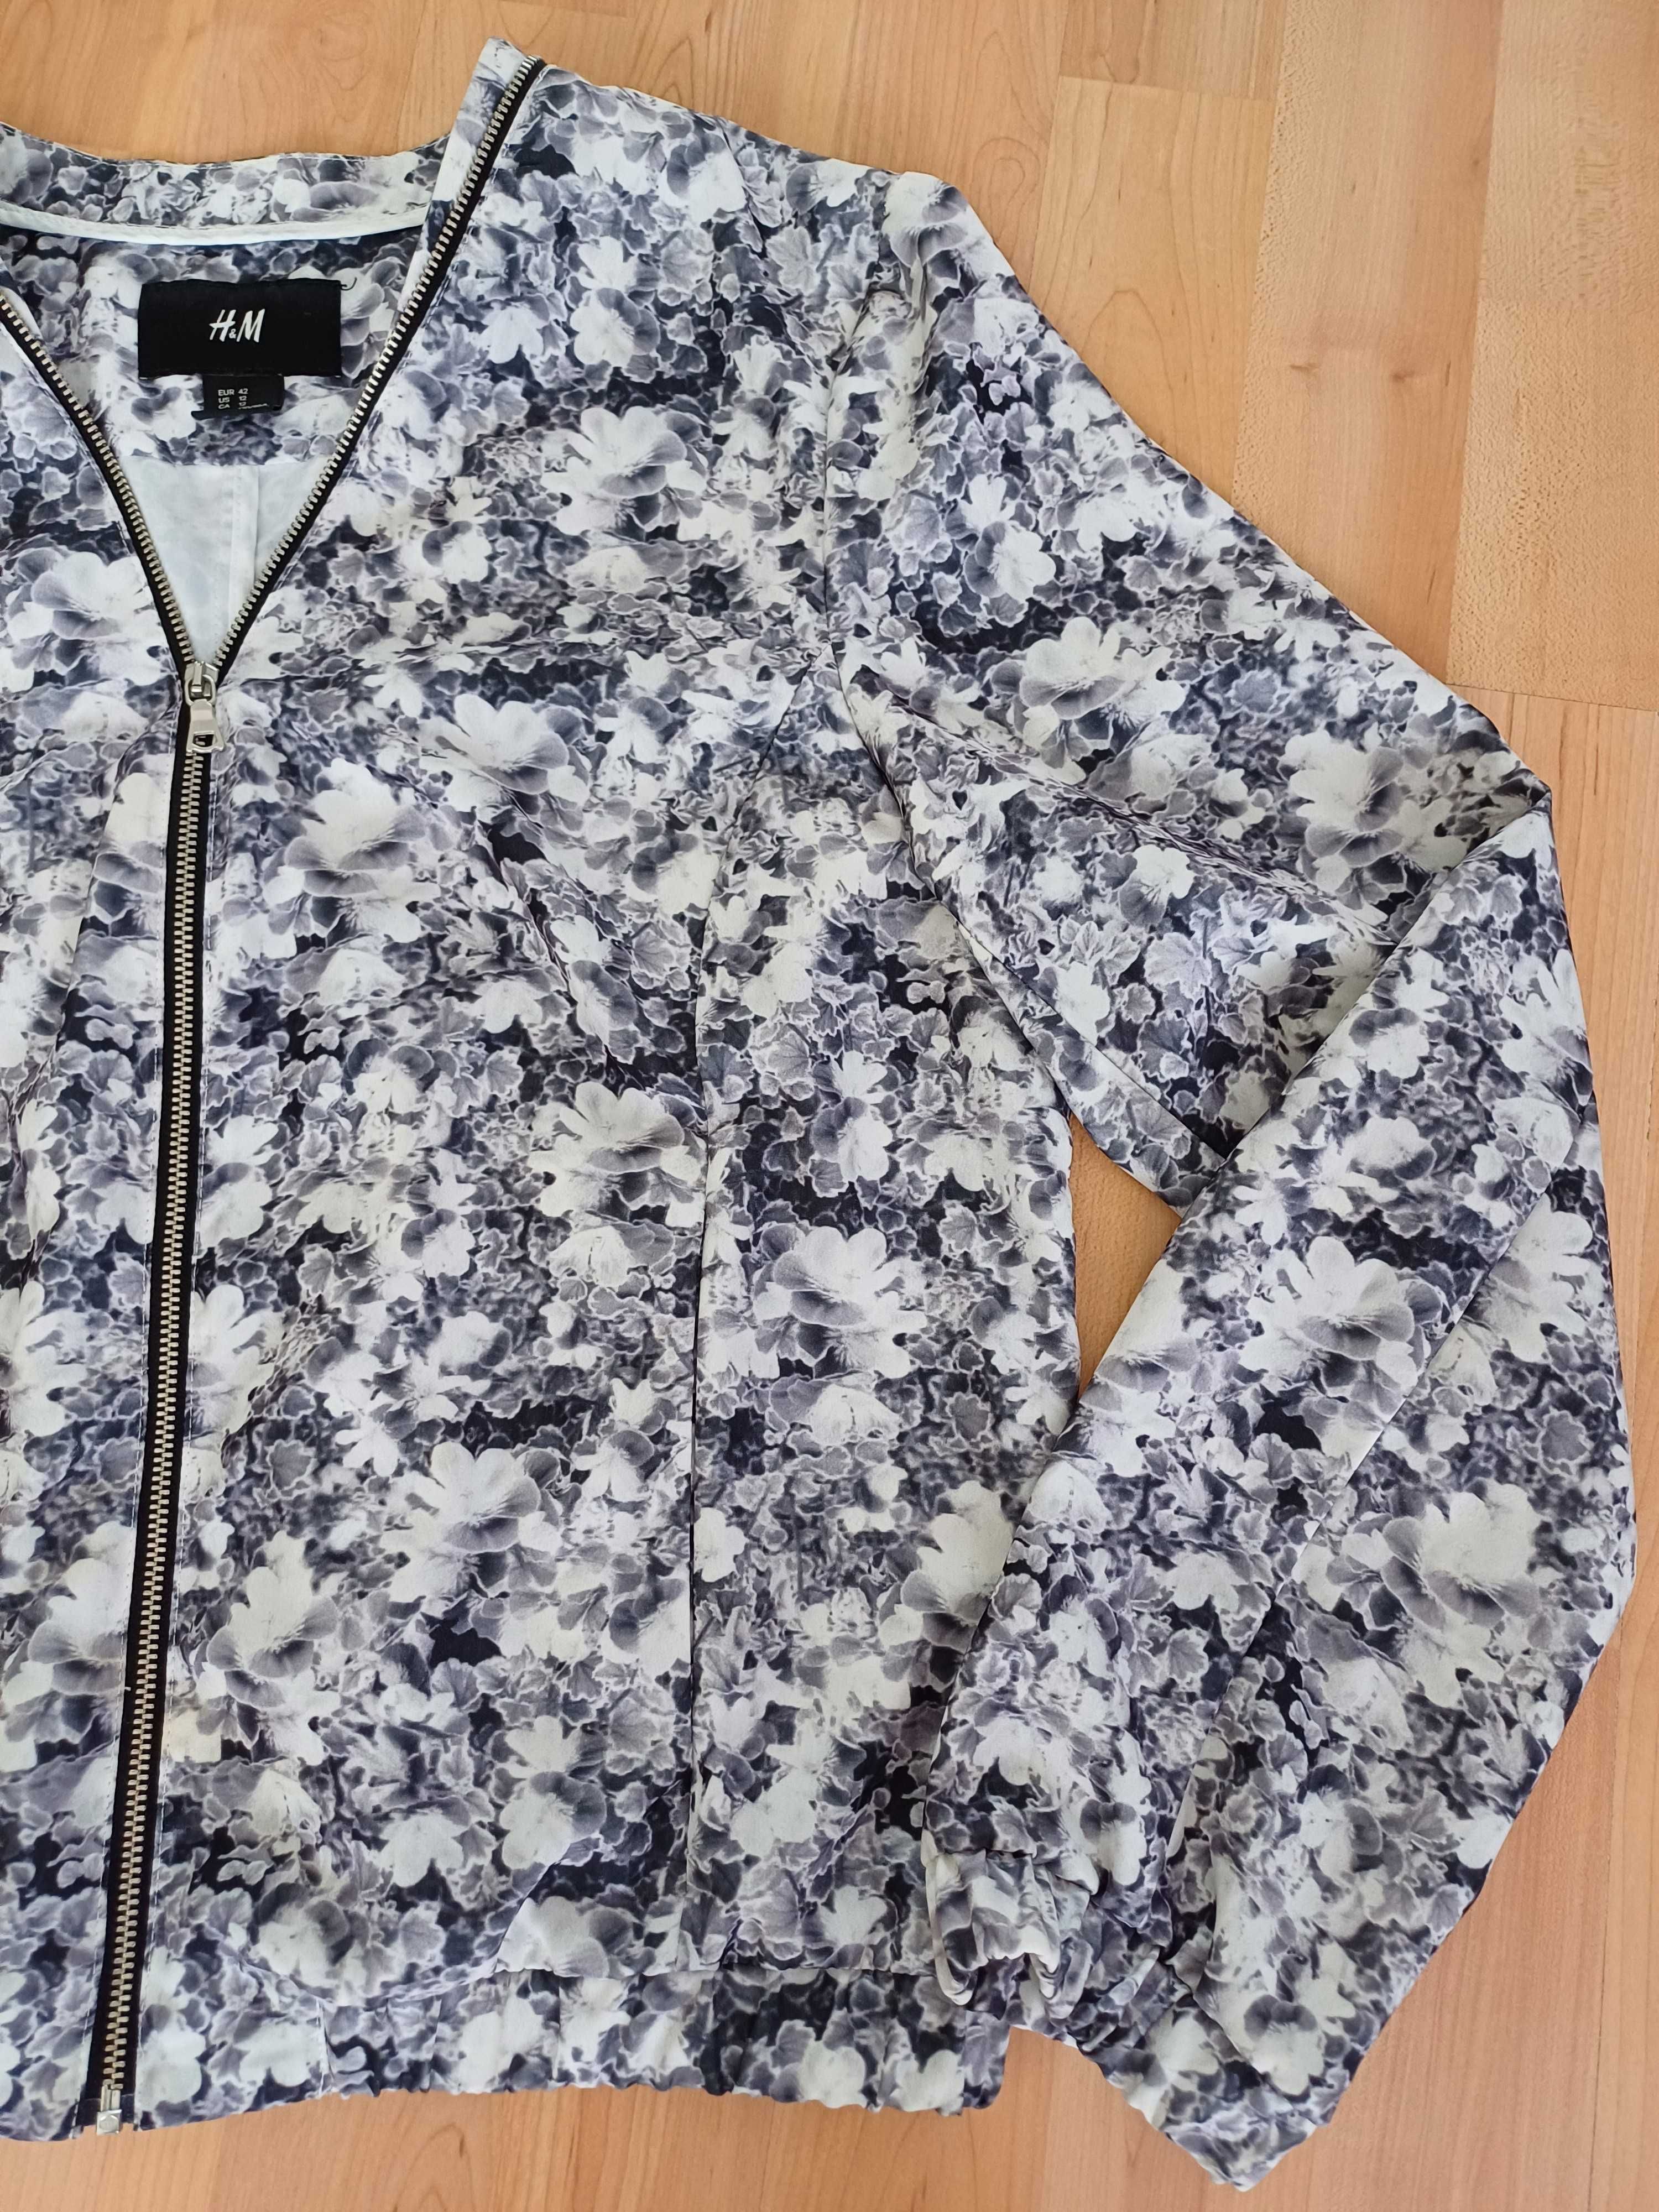 Bluza damska kurtka cienka żakiet na zamek na długi rękaw HM 42/XL